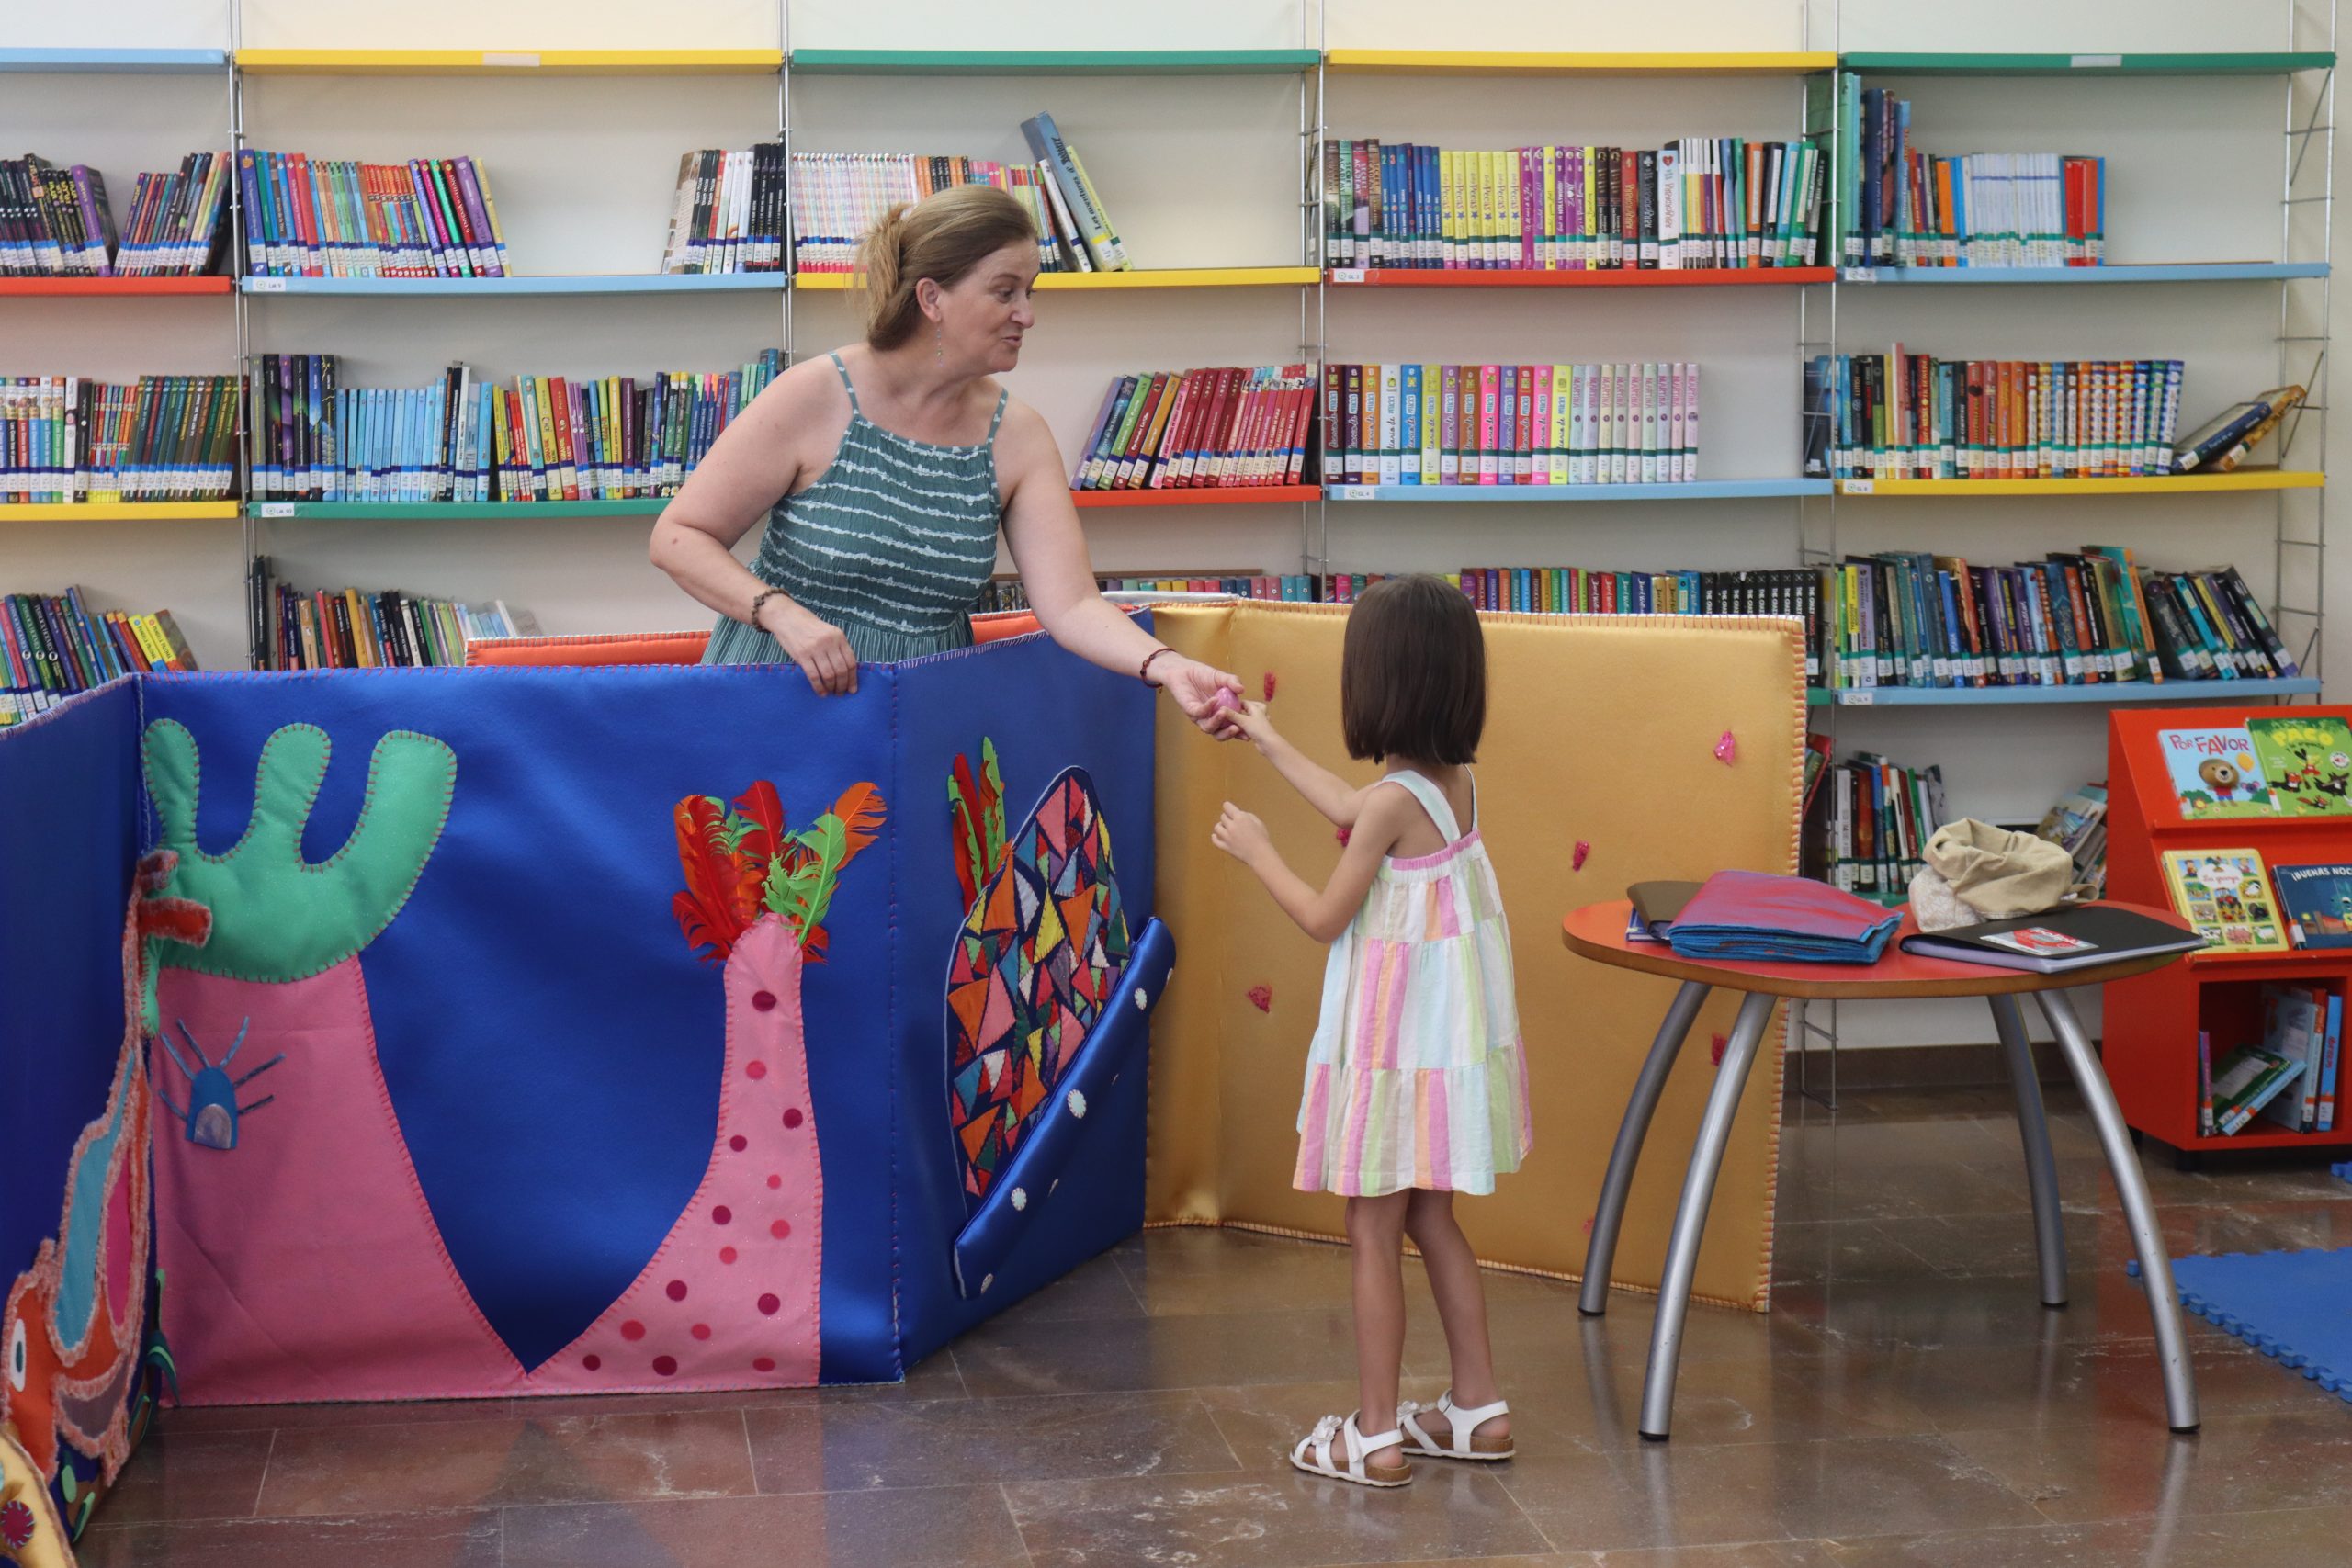 La biblioteca de Onda ofrece un verano de actividades sostenibles y divertidas para los más pequeños